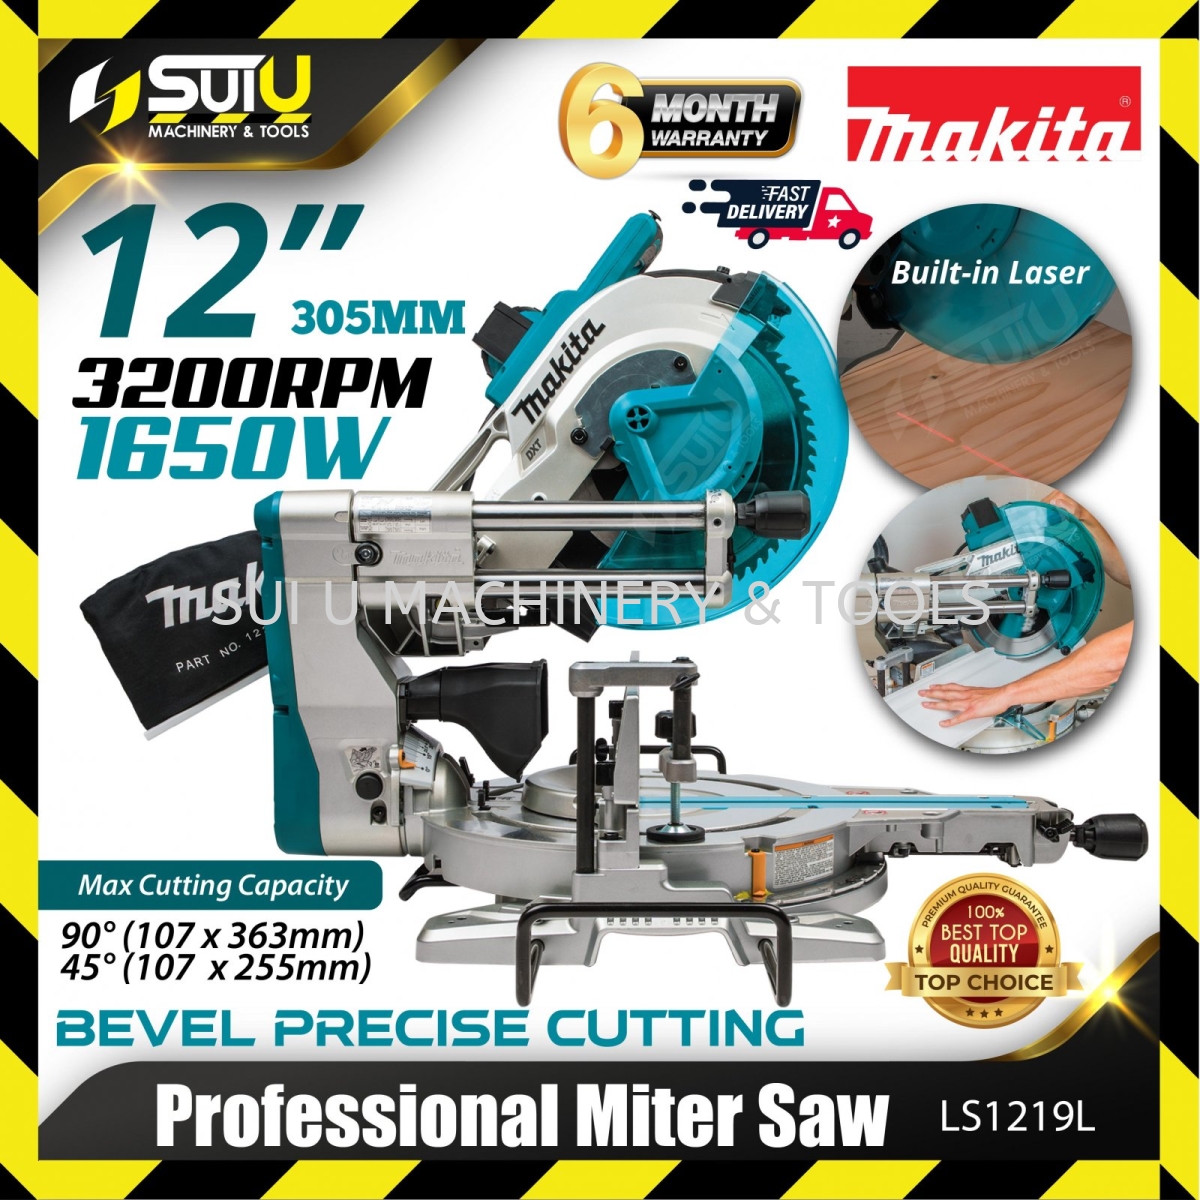 MAKITA LS1219L / LS1219 / LS1216 12" / 305MM Professional Miter Saw 1650W  3200RPM Mitre Saw , Table Saw Power